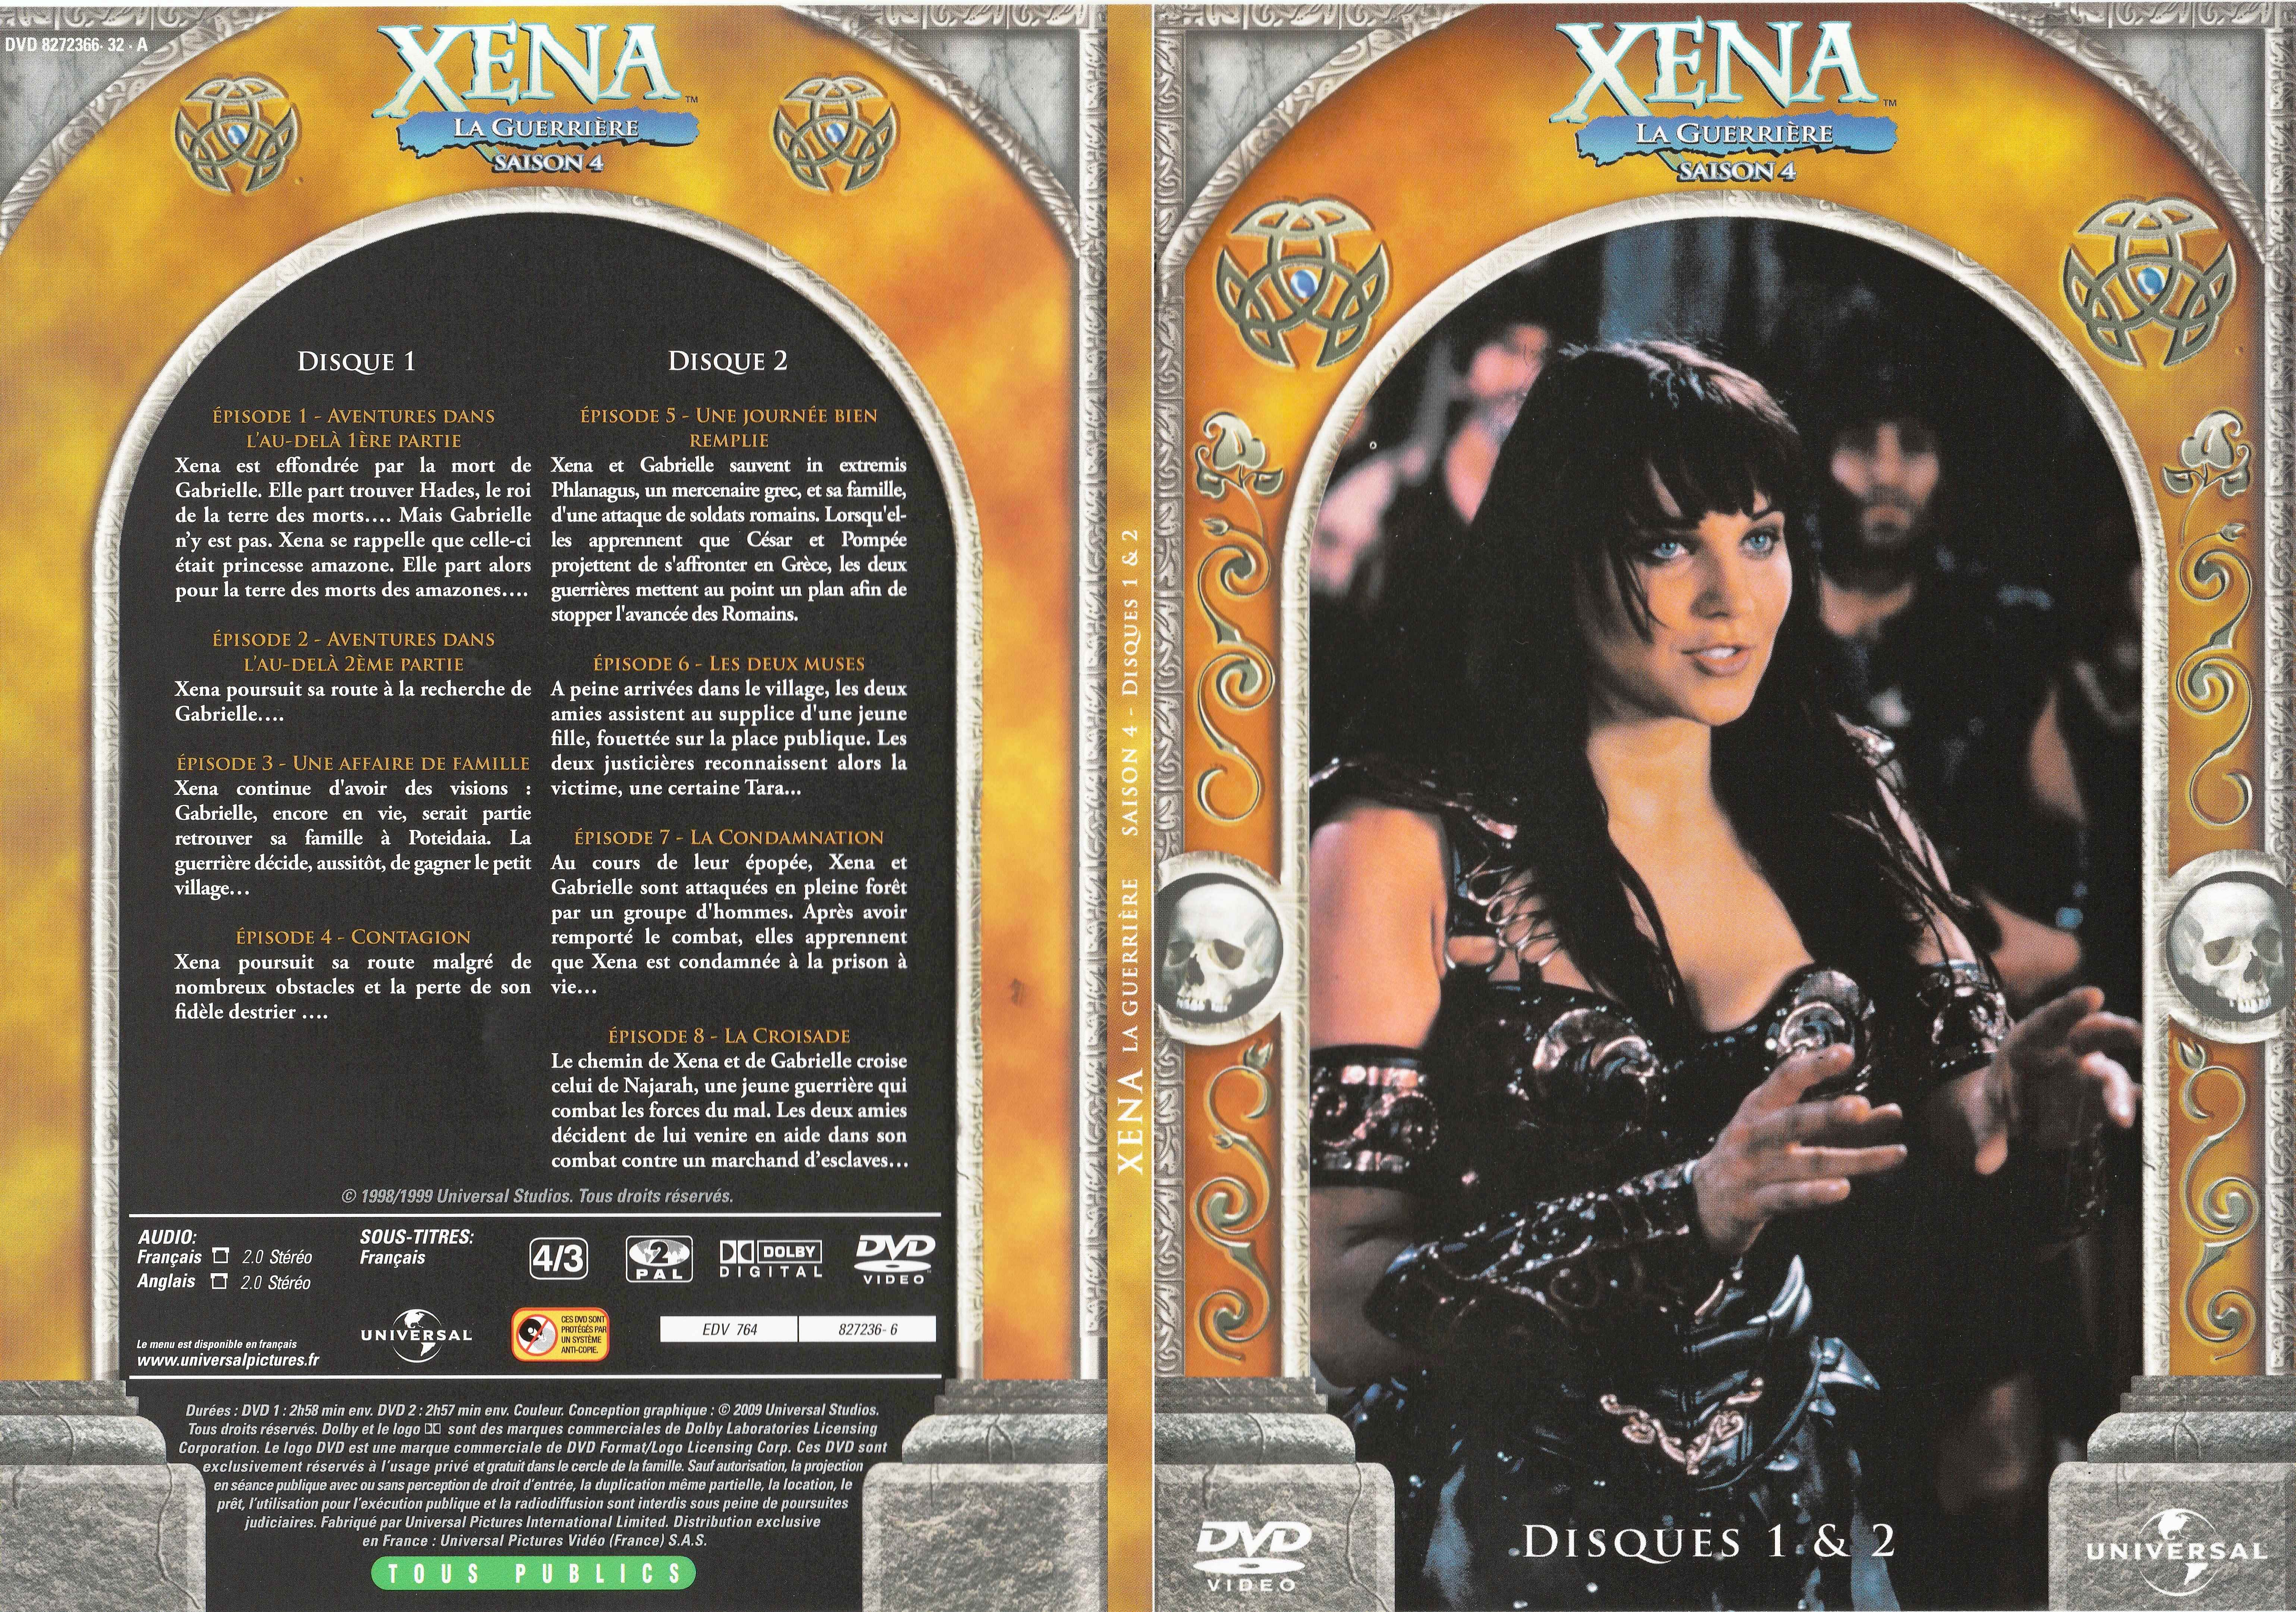 Jaquette DVD Xna la guerrire Saison 4 DVD 1